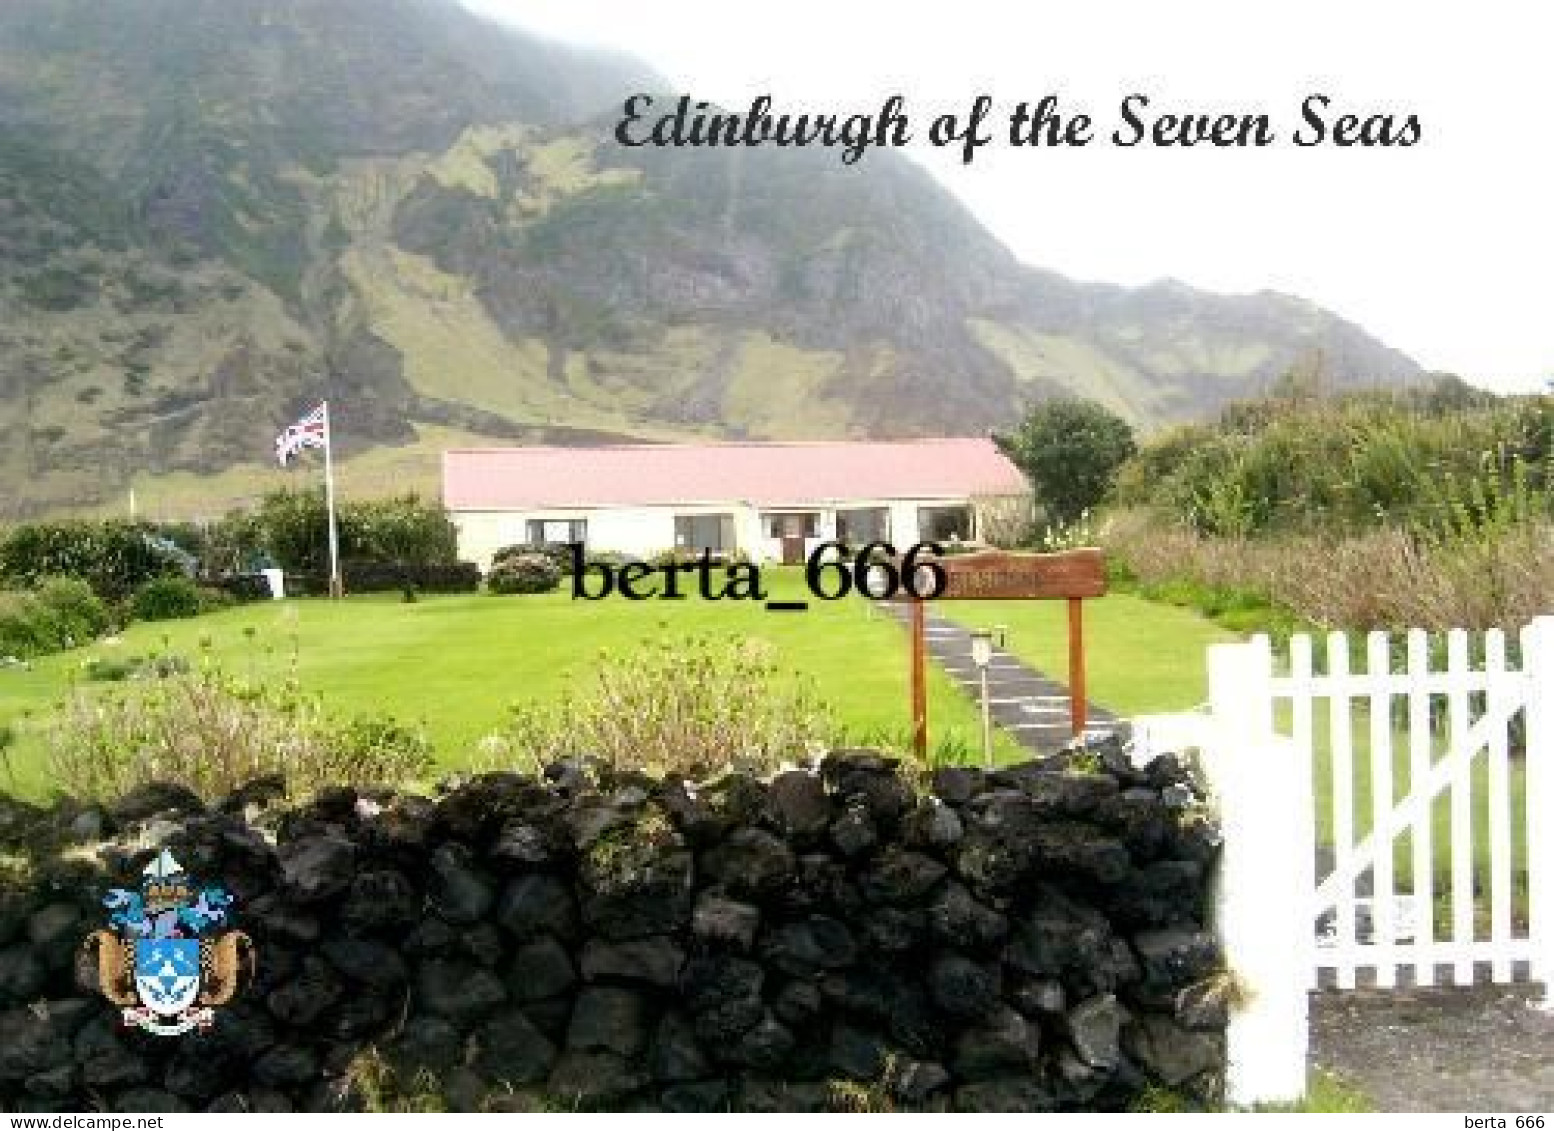 Tristan Da Cunha Island Edinburgh Of The Seven Seas New Postcard - Ohne Zuordnung